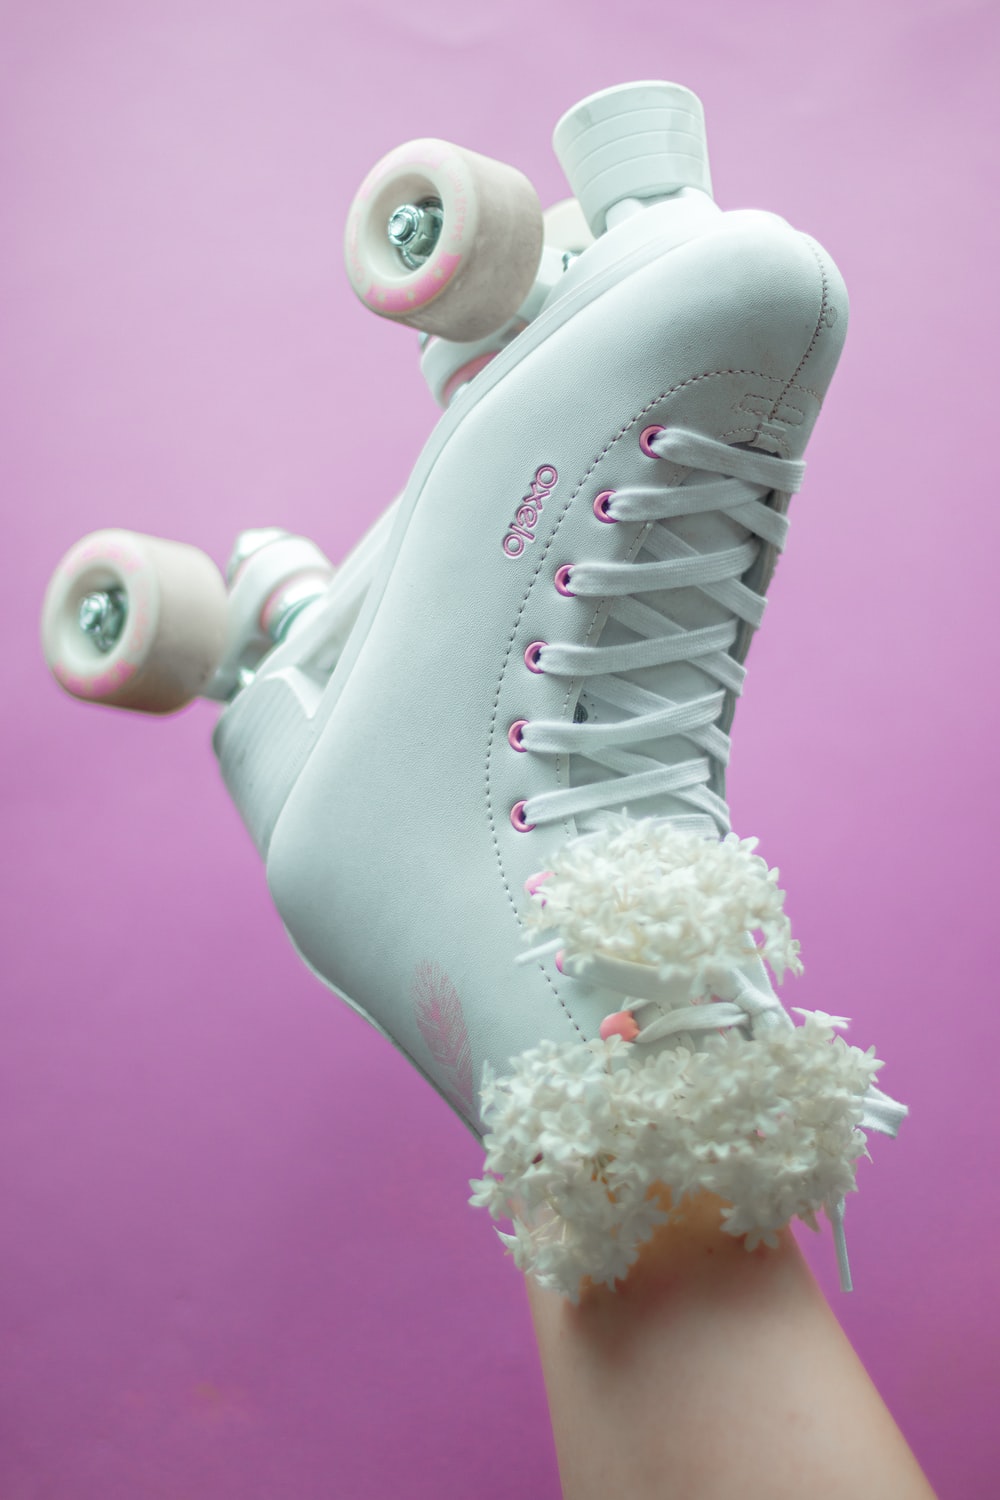 白色溜冰鞋图片